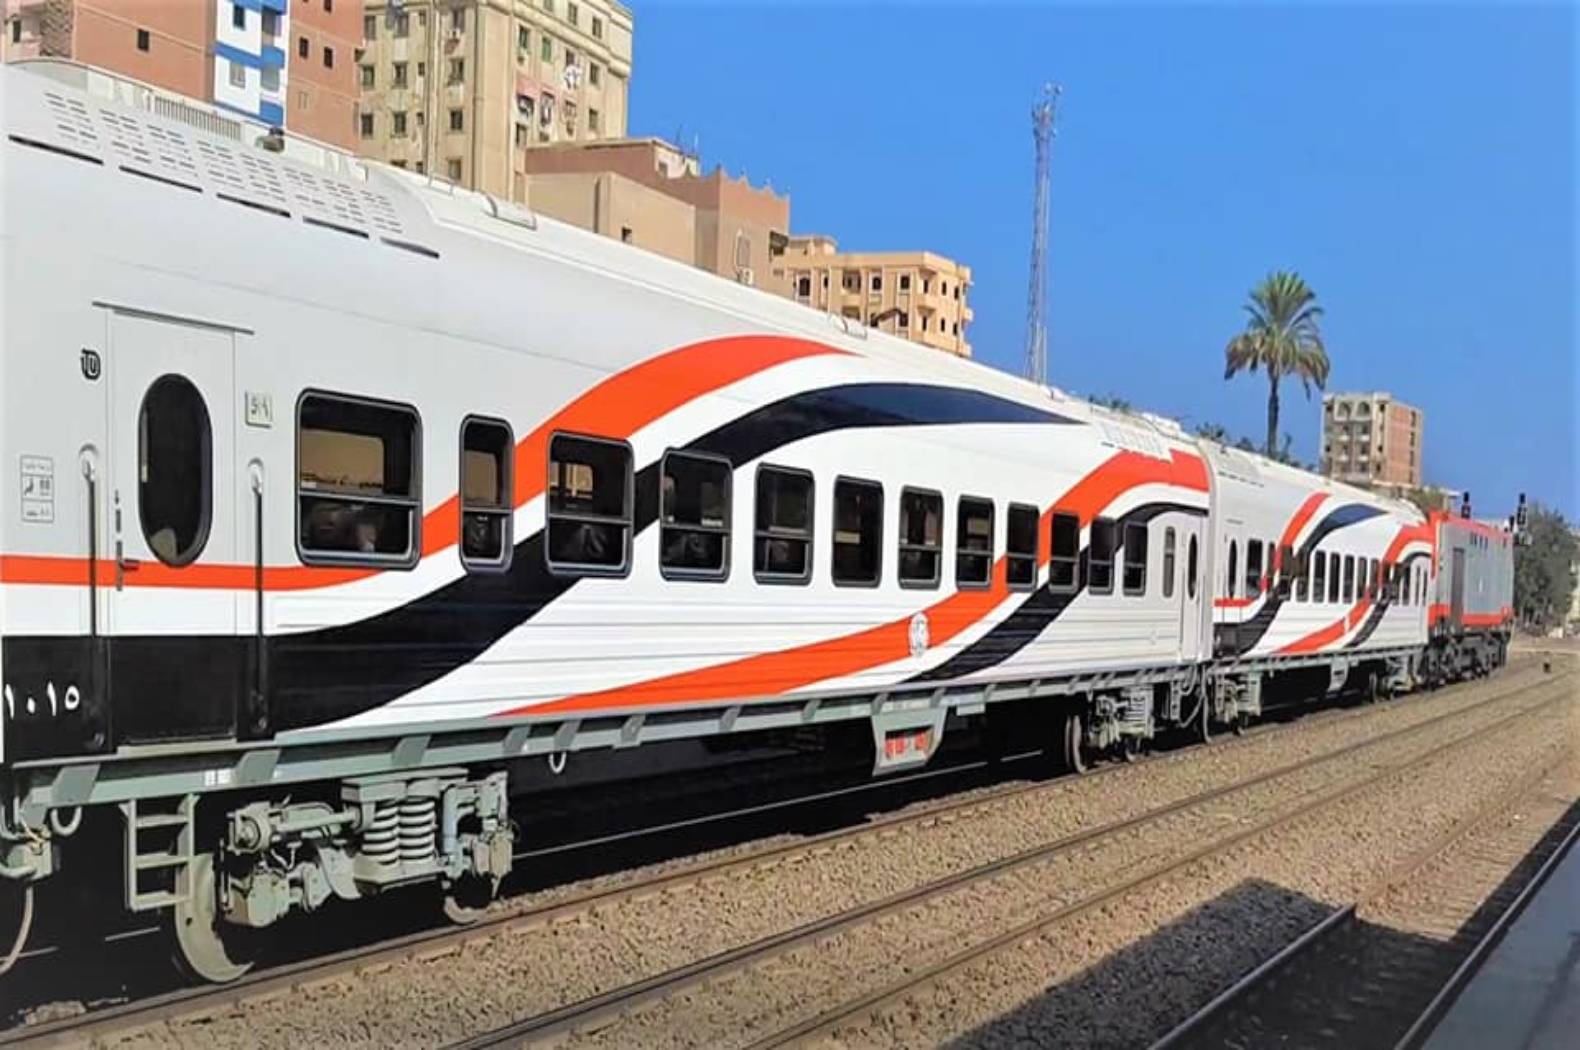 تعديل تركيب بعض القطارات بعربات تهوية ديناميكية بدلاً من عربات "تحيا مصر"